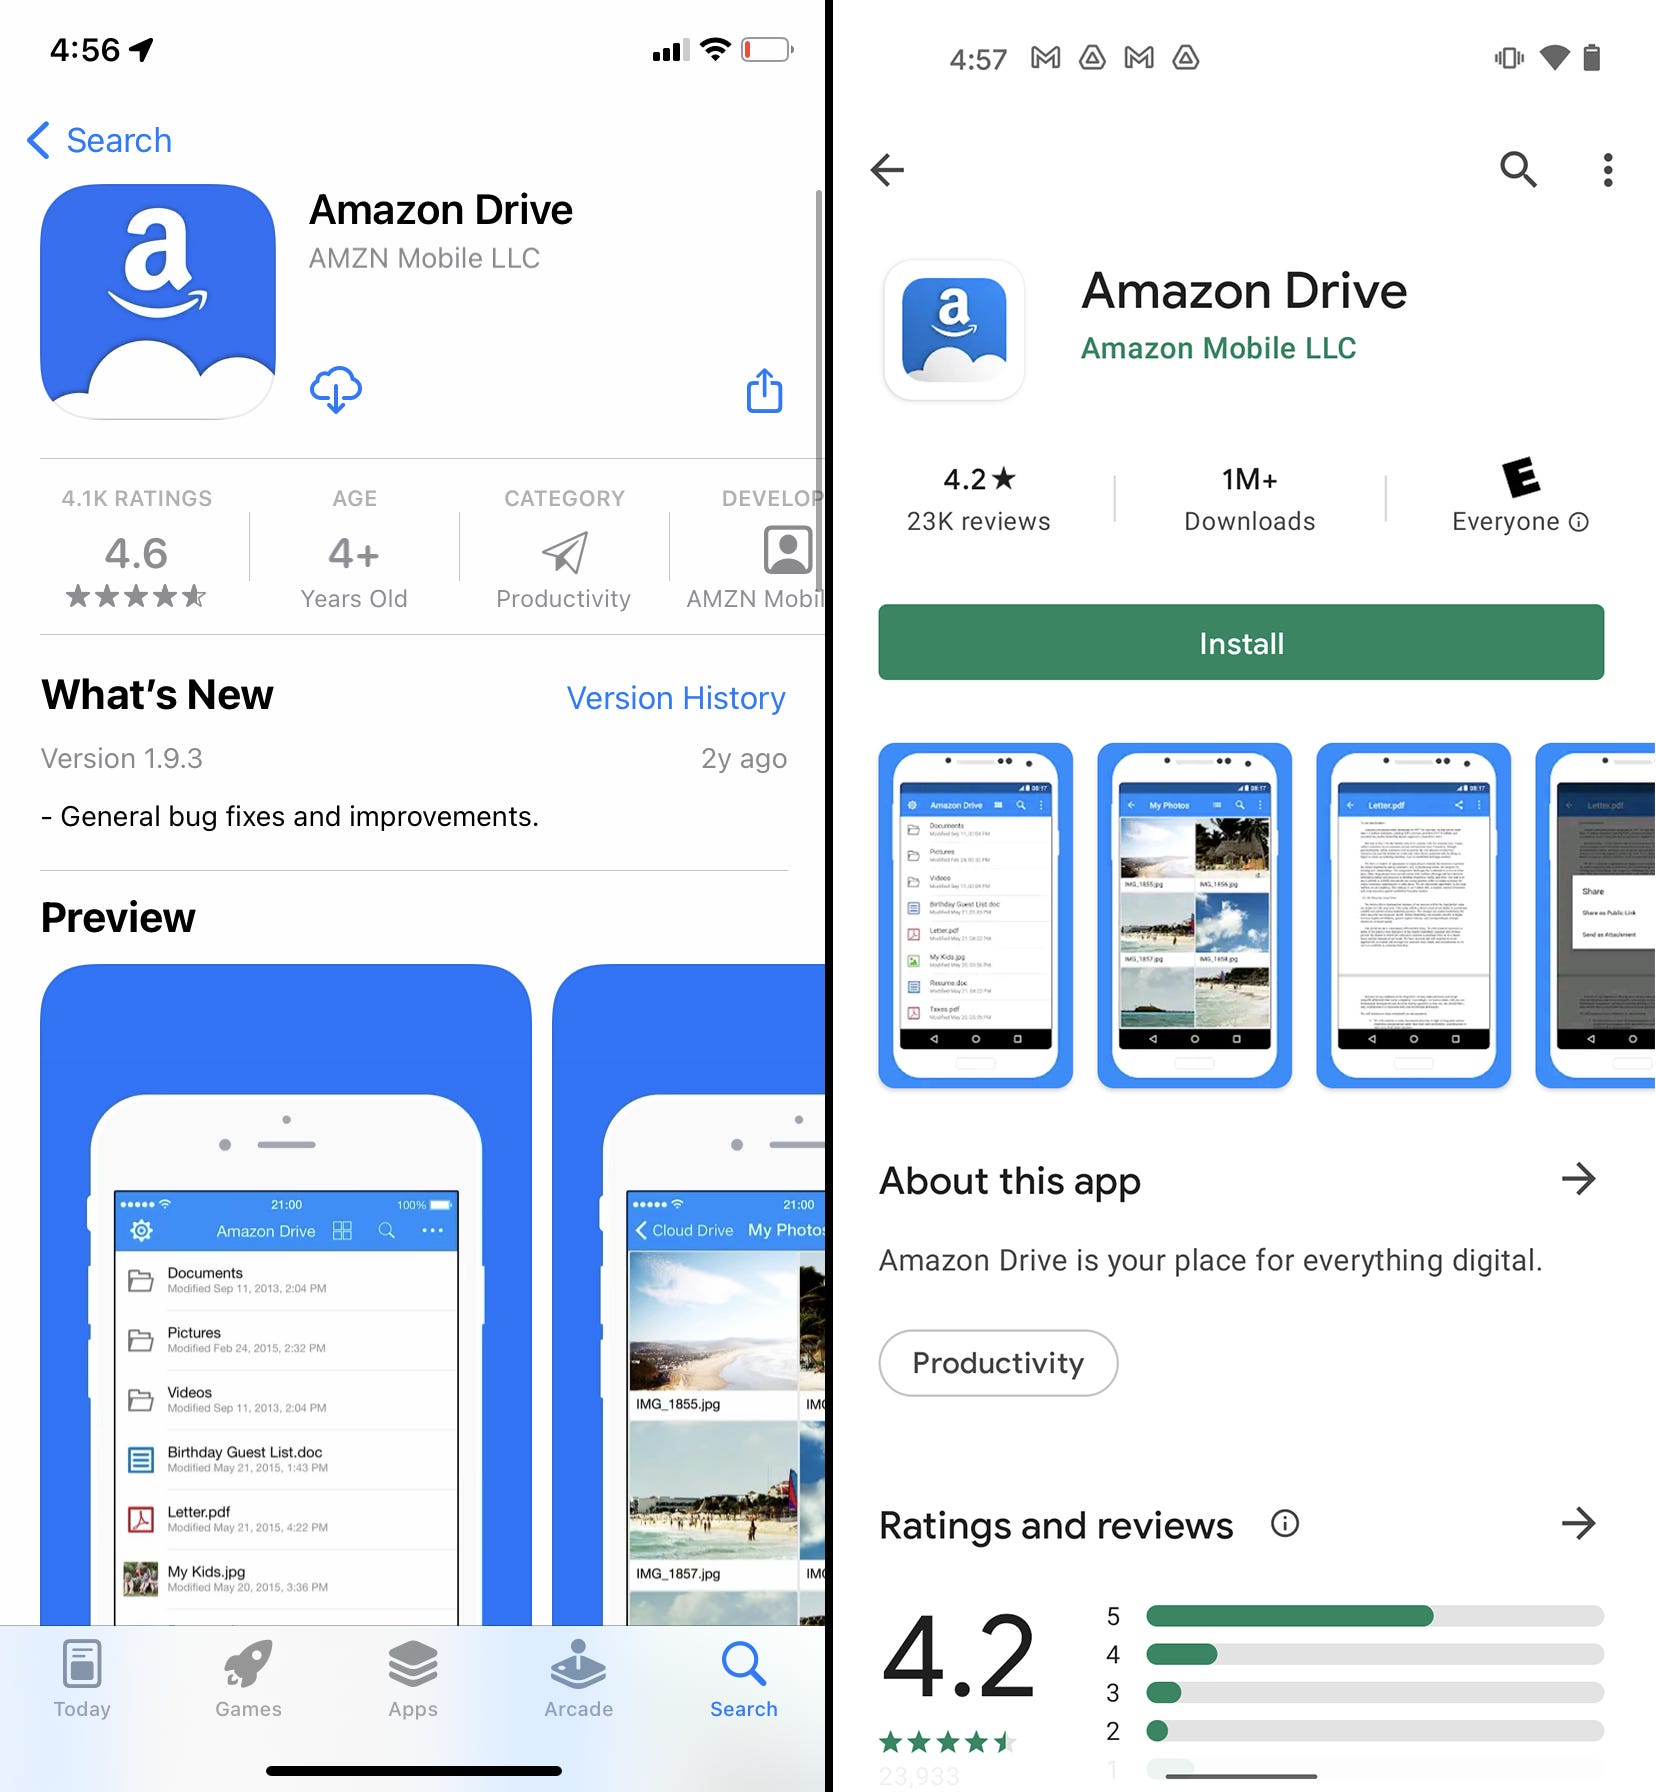 Le pagine dell'App Store e del Google Play Store per l'app Amazon Drive.